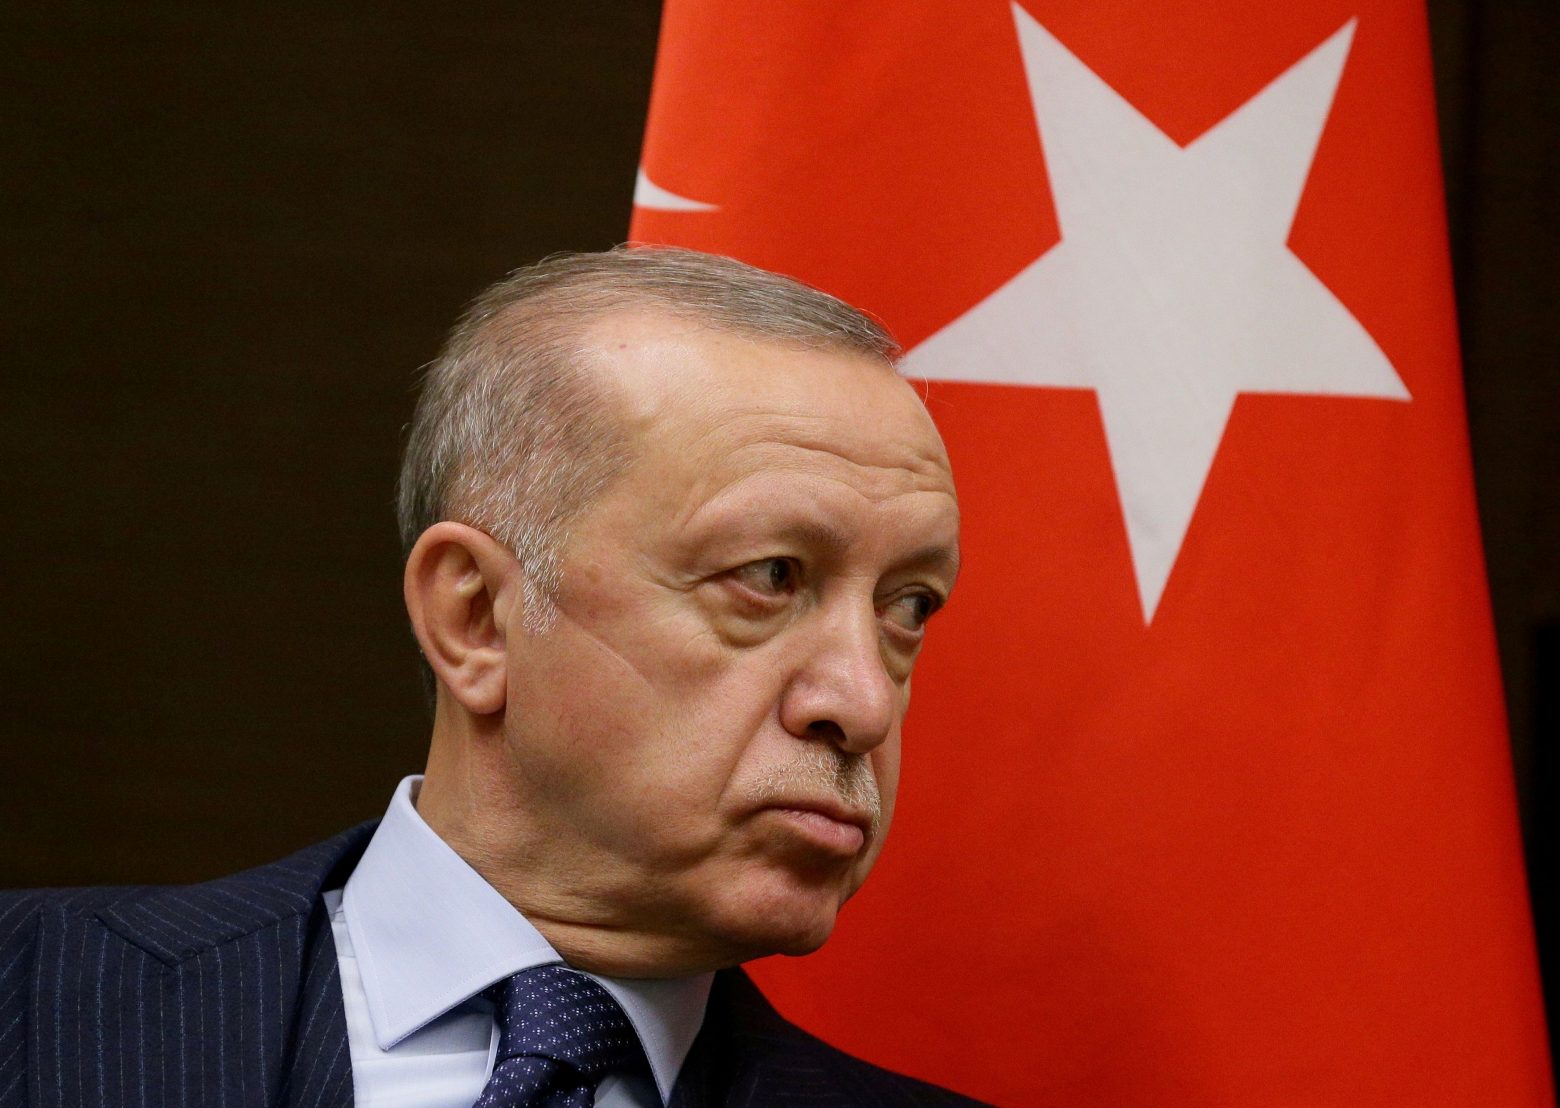 Ανοιξε πόλεμο με τη Δύση ο Ερντογάν – Το χαρτί του εθνικισμού και η συνωμοσιολογία στην υπόθεση Καβαλά